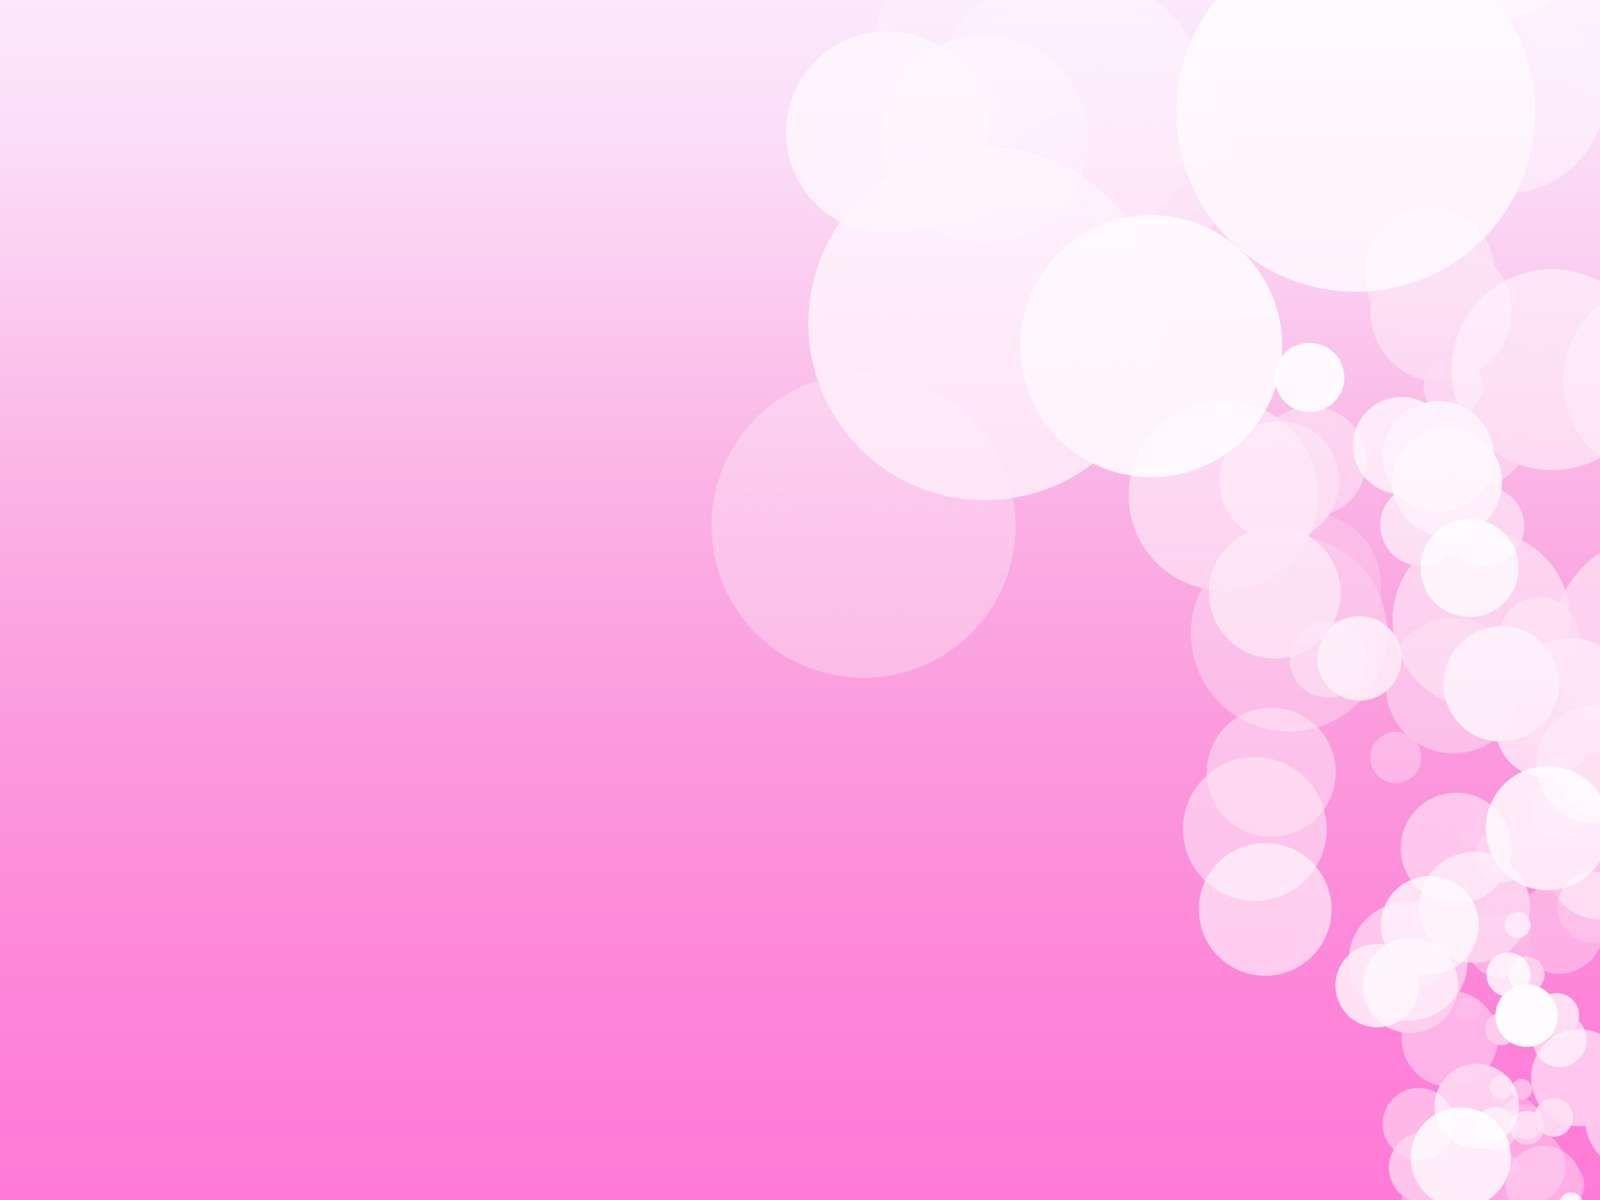 presentation background images pink